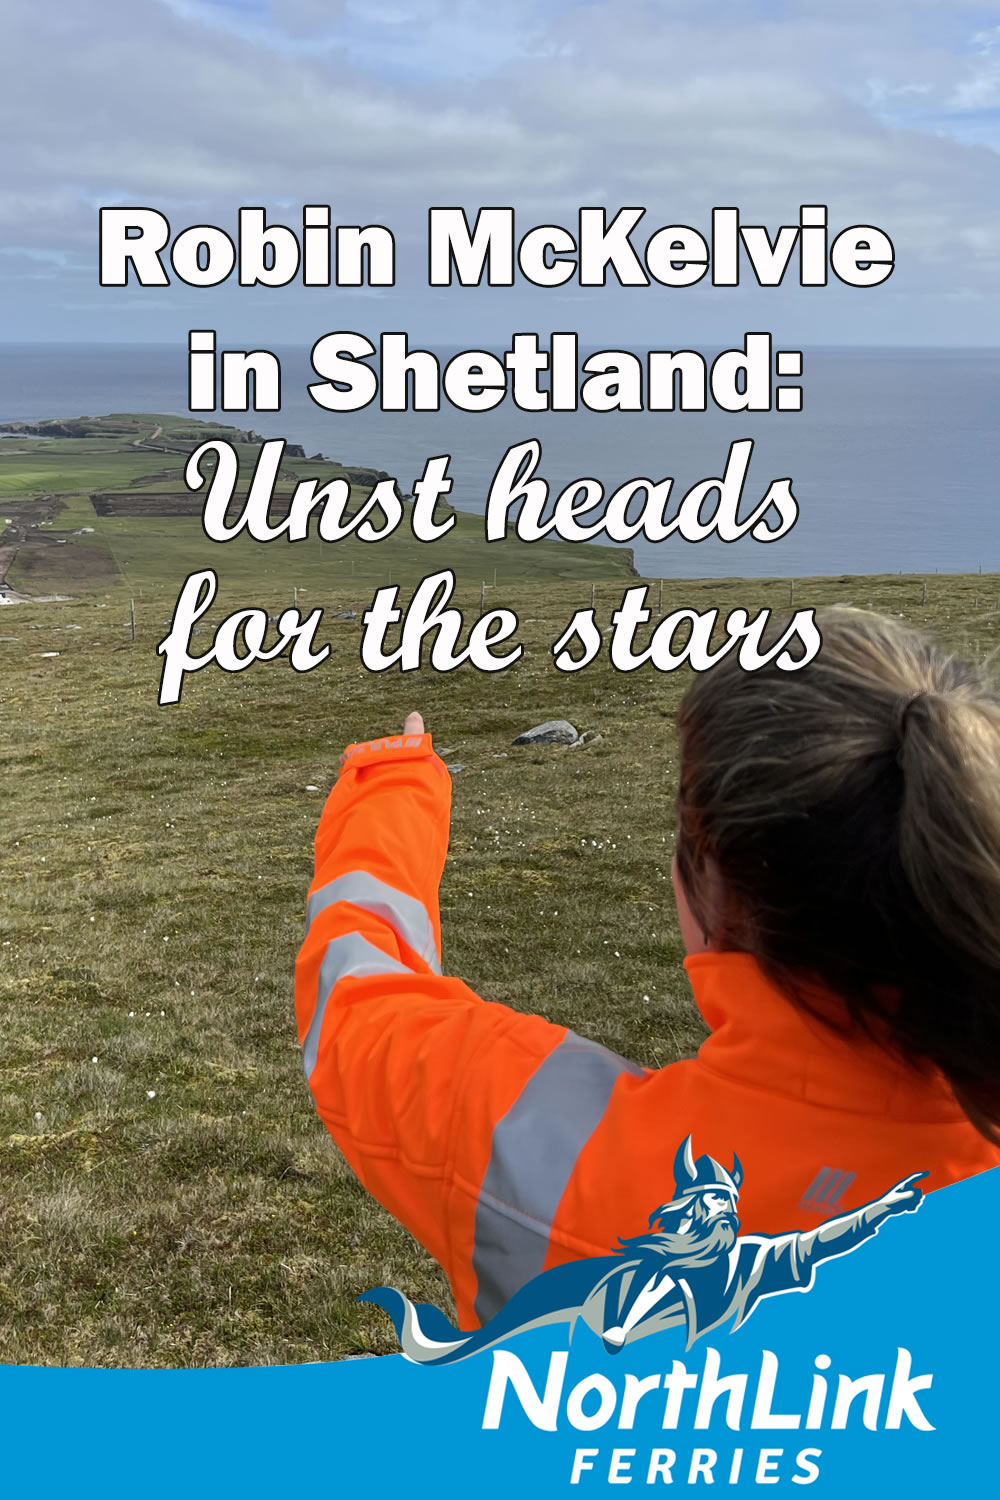 Robin McKelvie in Shetland: Unst heads for the stars